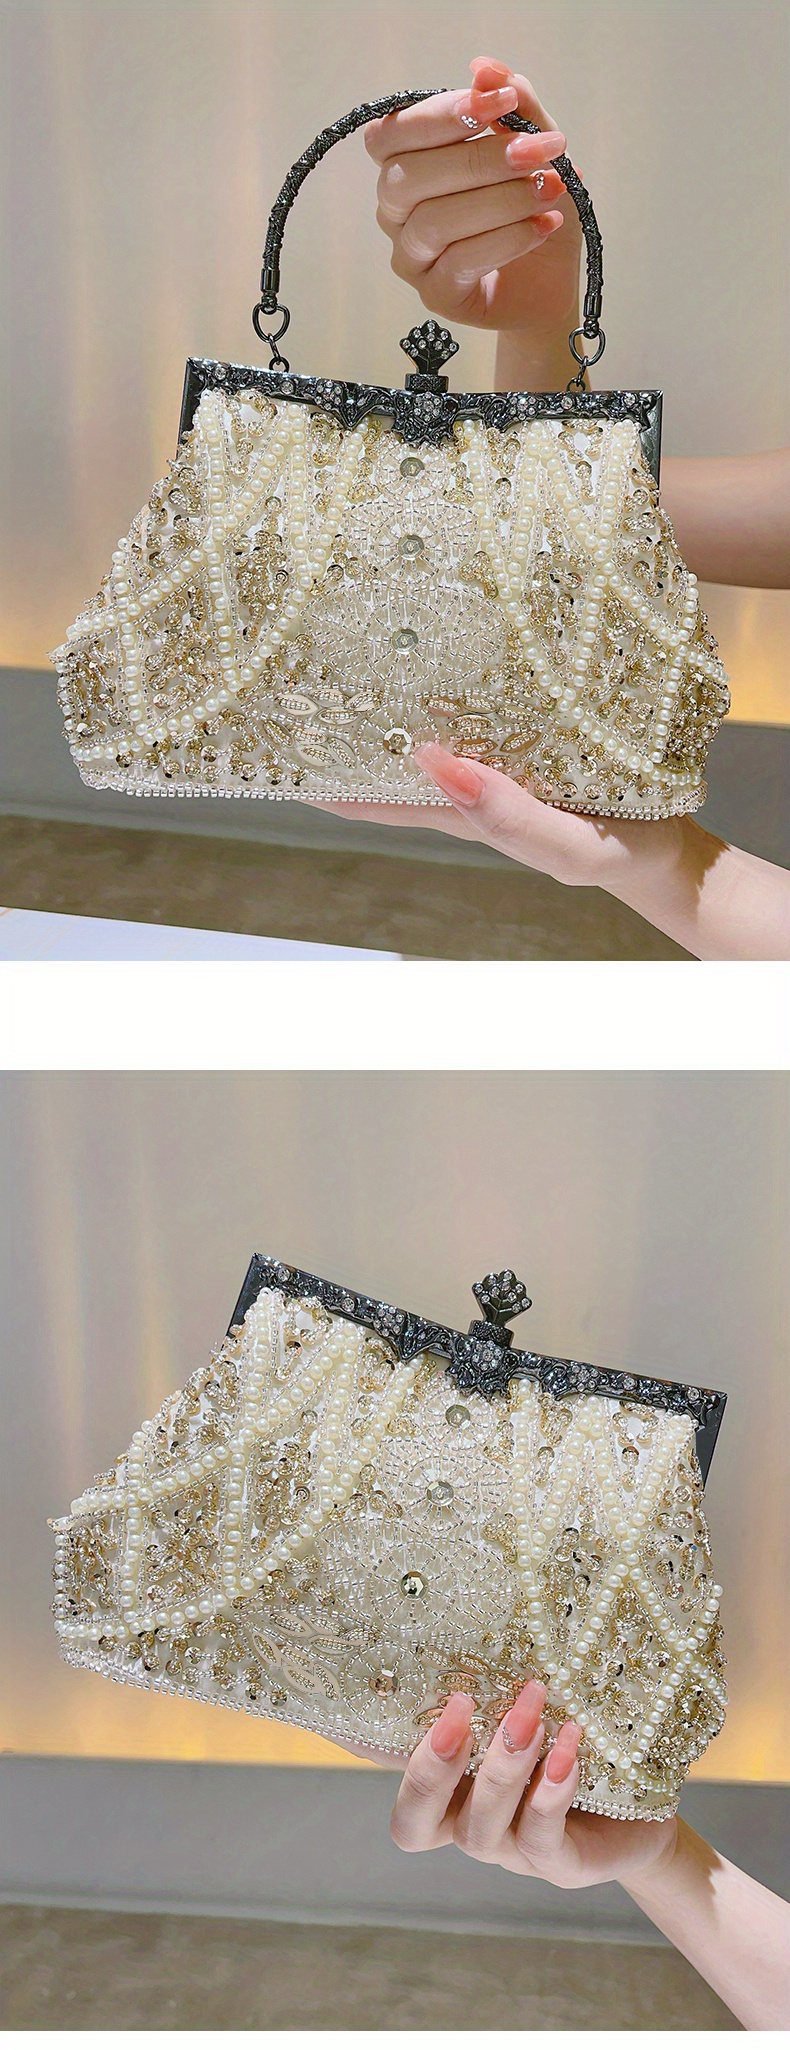 rose gold vintage style crystal & pearl clutch bag evening bag